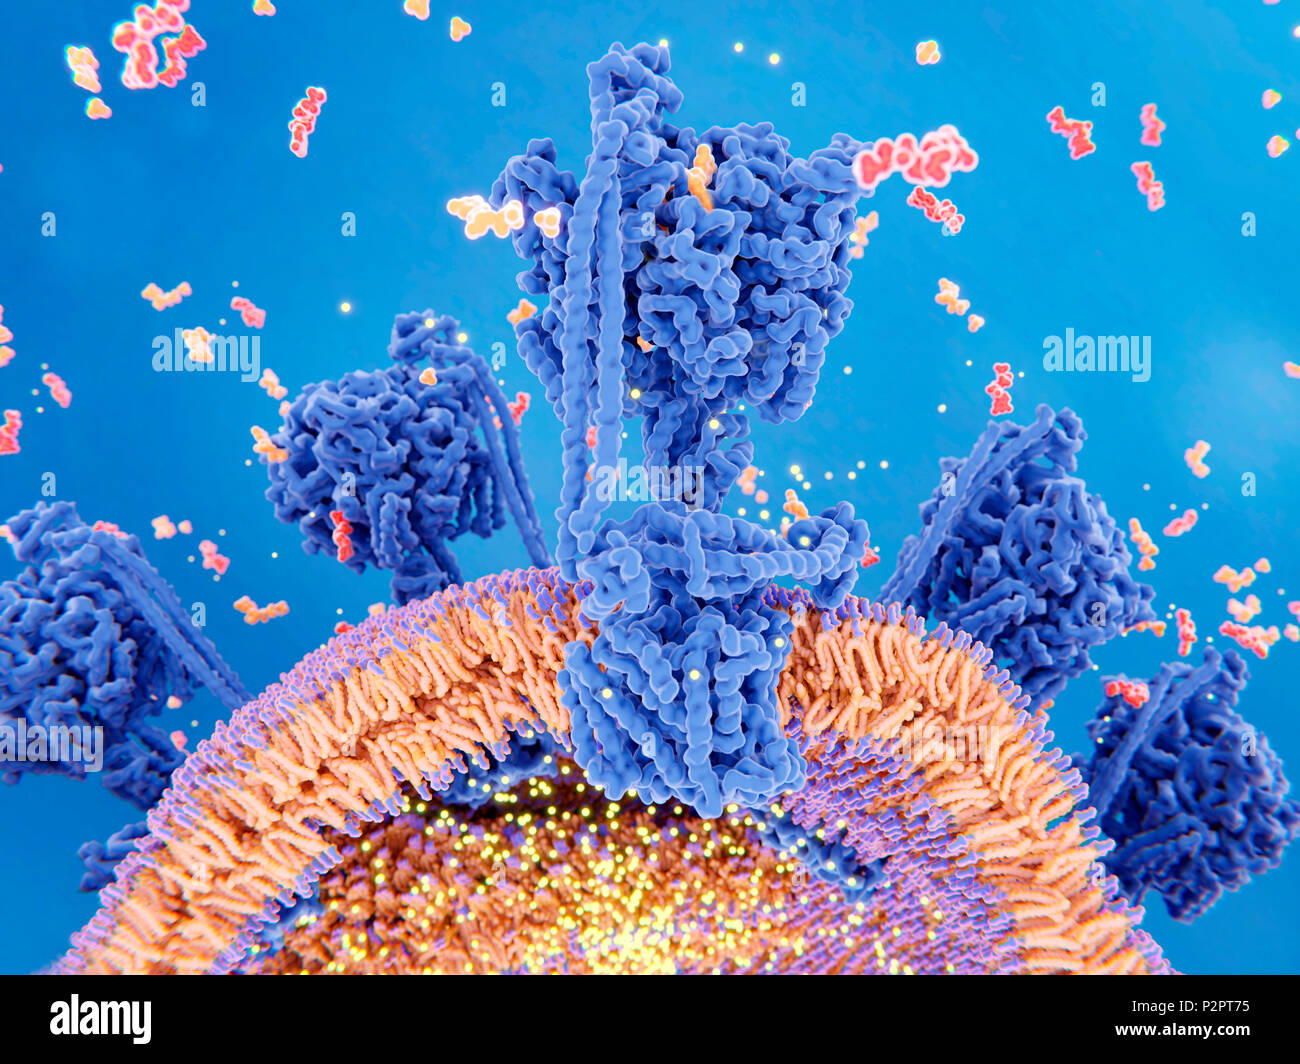 La production d'ATP dans la mitochondrie. Illustration du complexe enzymatique qui entraîne la synthèse de la molécule de transport de l'énergie de l'ATP (adénosine triphosphate, rouge). Connu sous le nom de l'enzyme ATP synthase, complexe (plusieurs illustré) est intégrée dans la membrane interne mitochondriale (orange). La partie inférieure est un canal par lequel les protons (points jaunes) se déplacent. La partie supérieure est l'endroit où a lieu la synthèse de l'ATP. L'ATP est formé à partir d'une réaction entre l'adénosine diphosphate (ADP) et le phosphate inorganique (en orange). Le gradient de proton (points jaunes à l'intérieur et l'extérieur de la mitochondrie) à travers le Banque D'Images